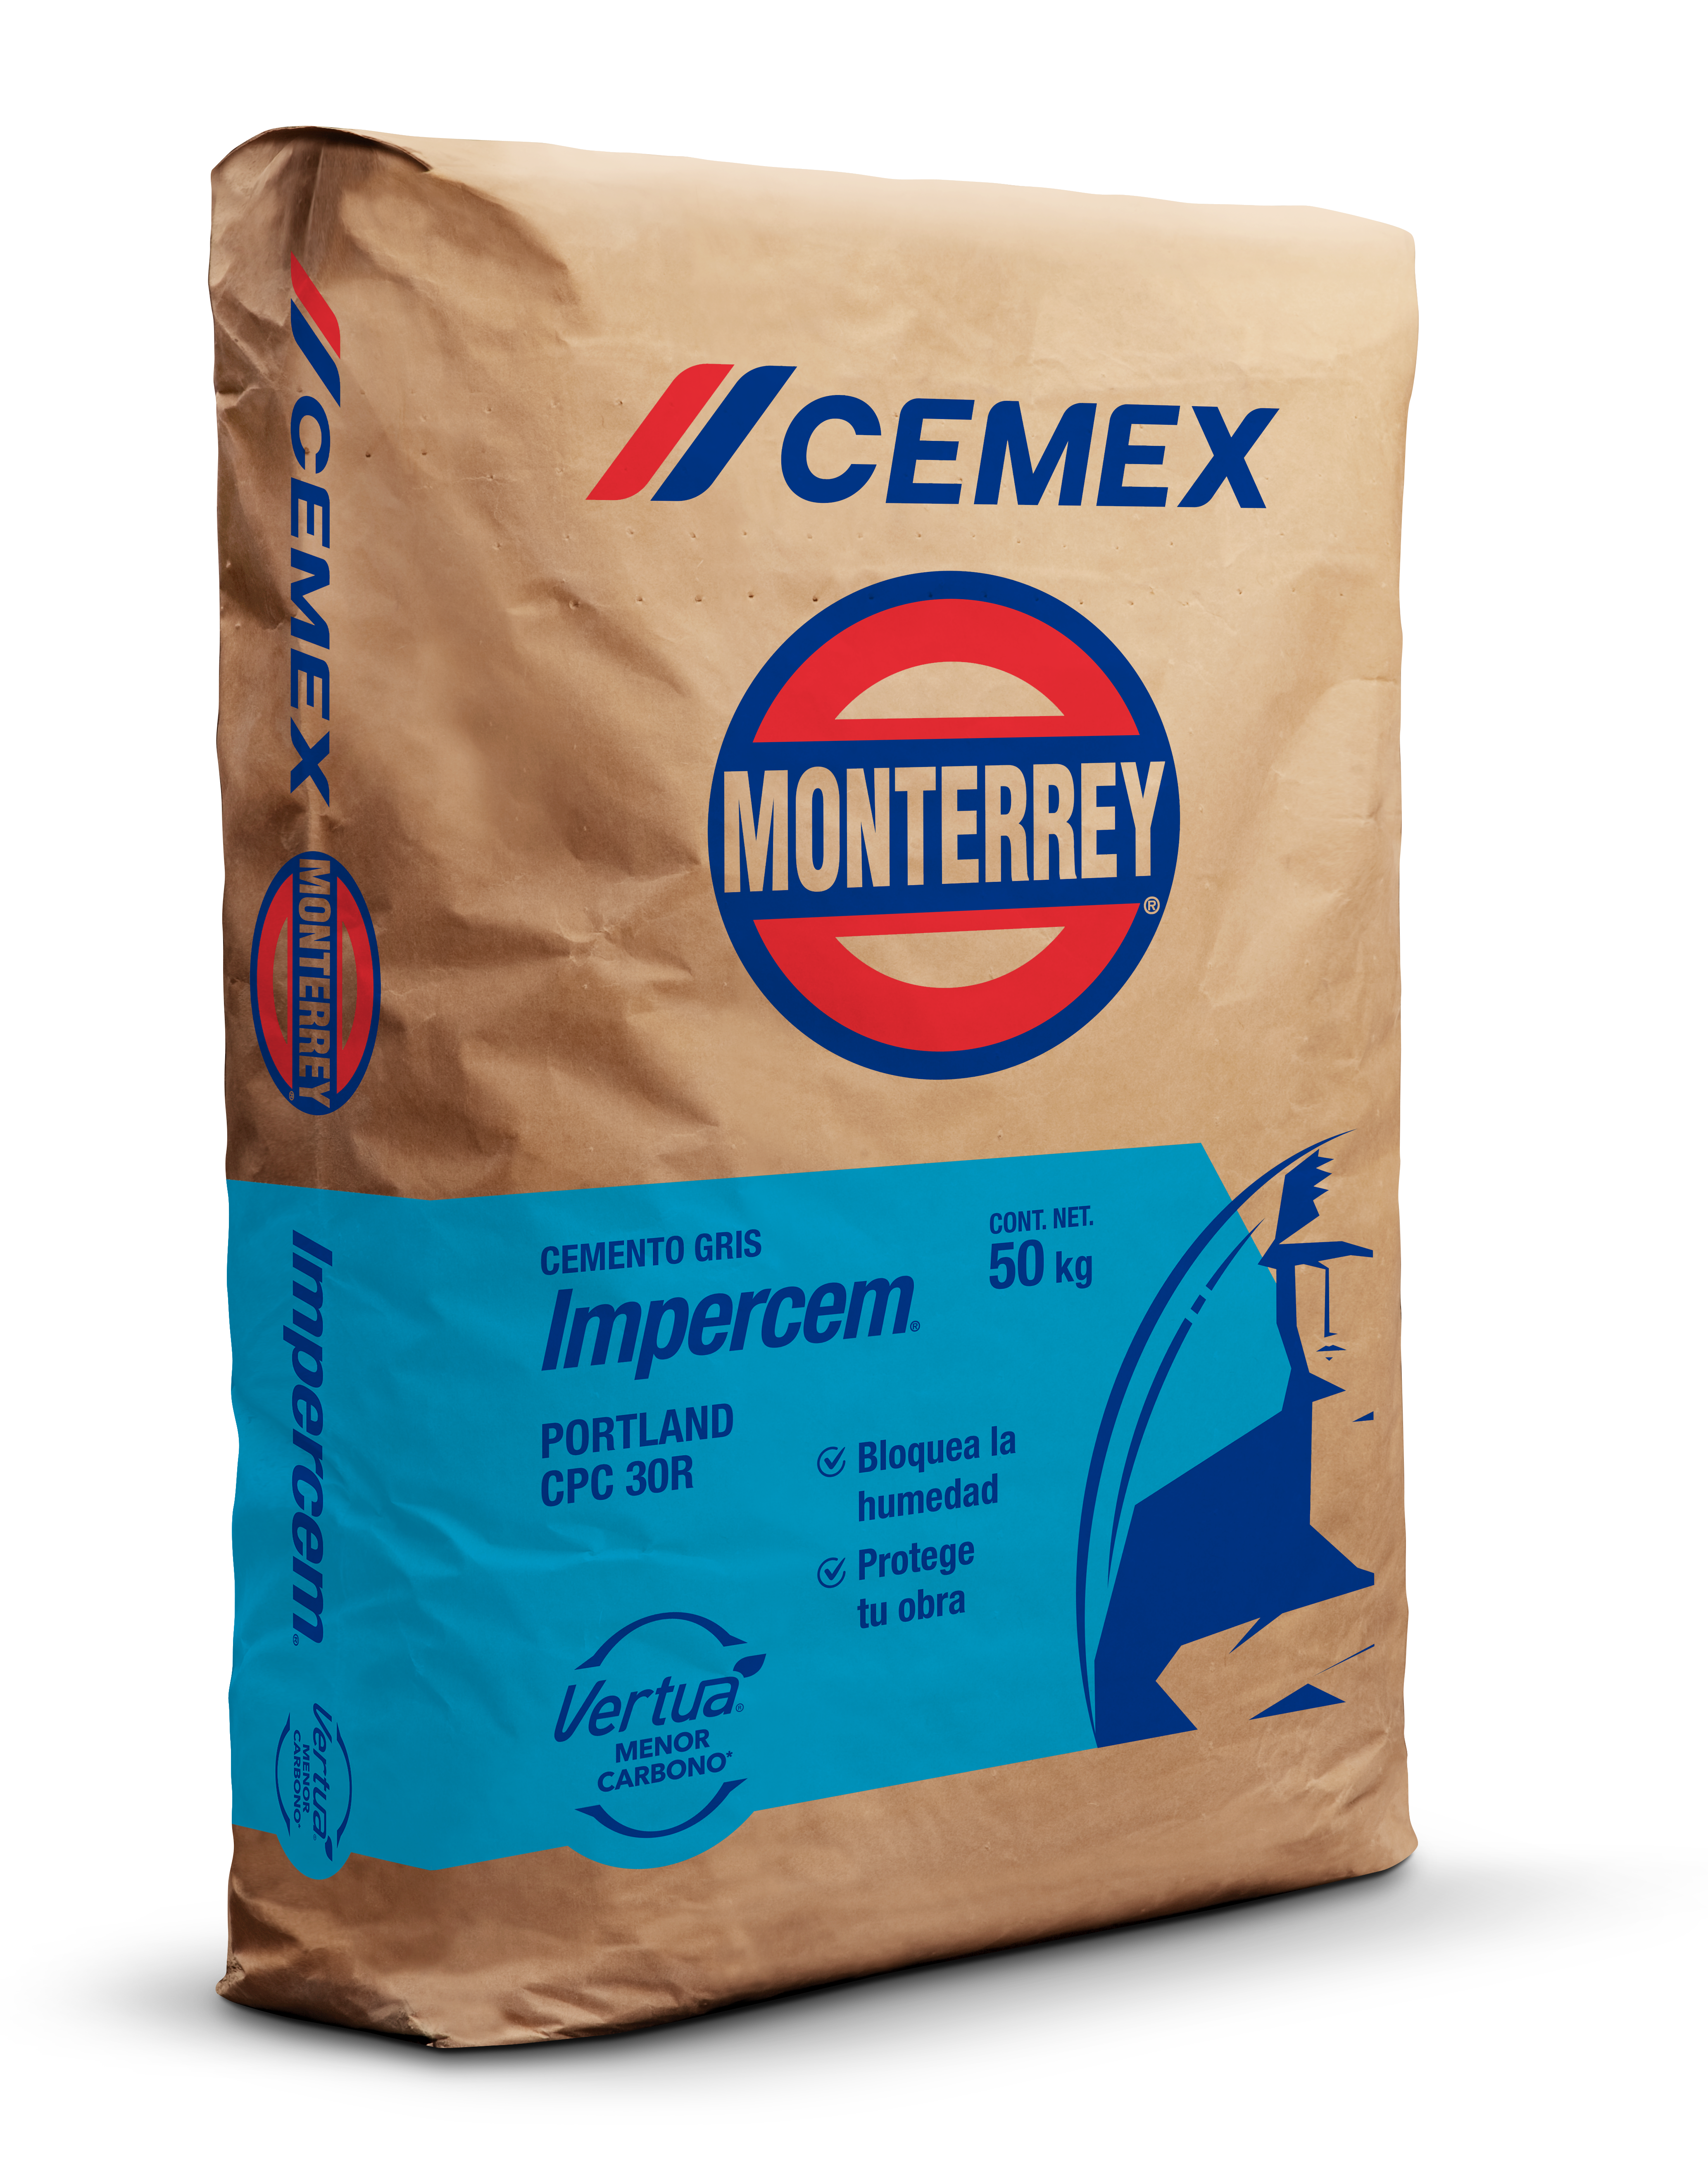 Cemento Mortero CEMEX - Cemento - Construrama Jerez